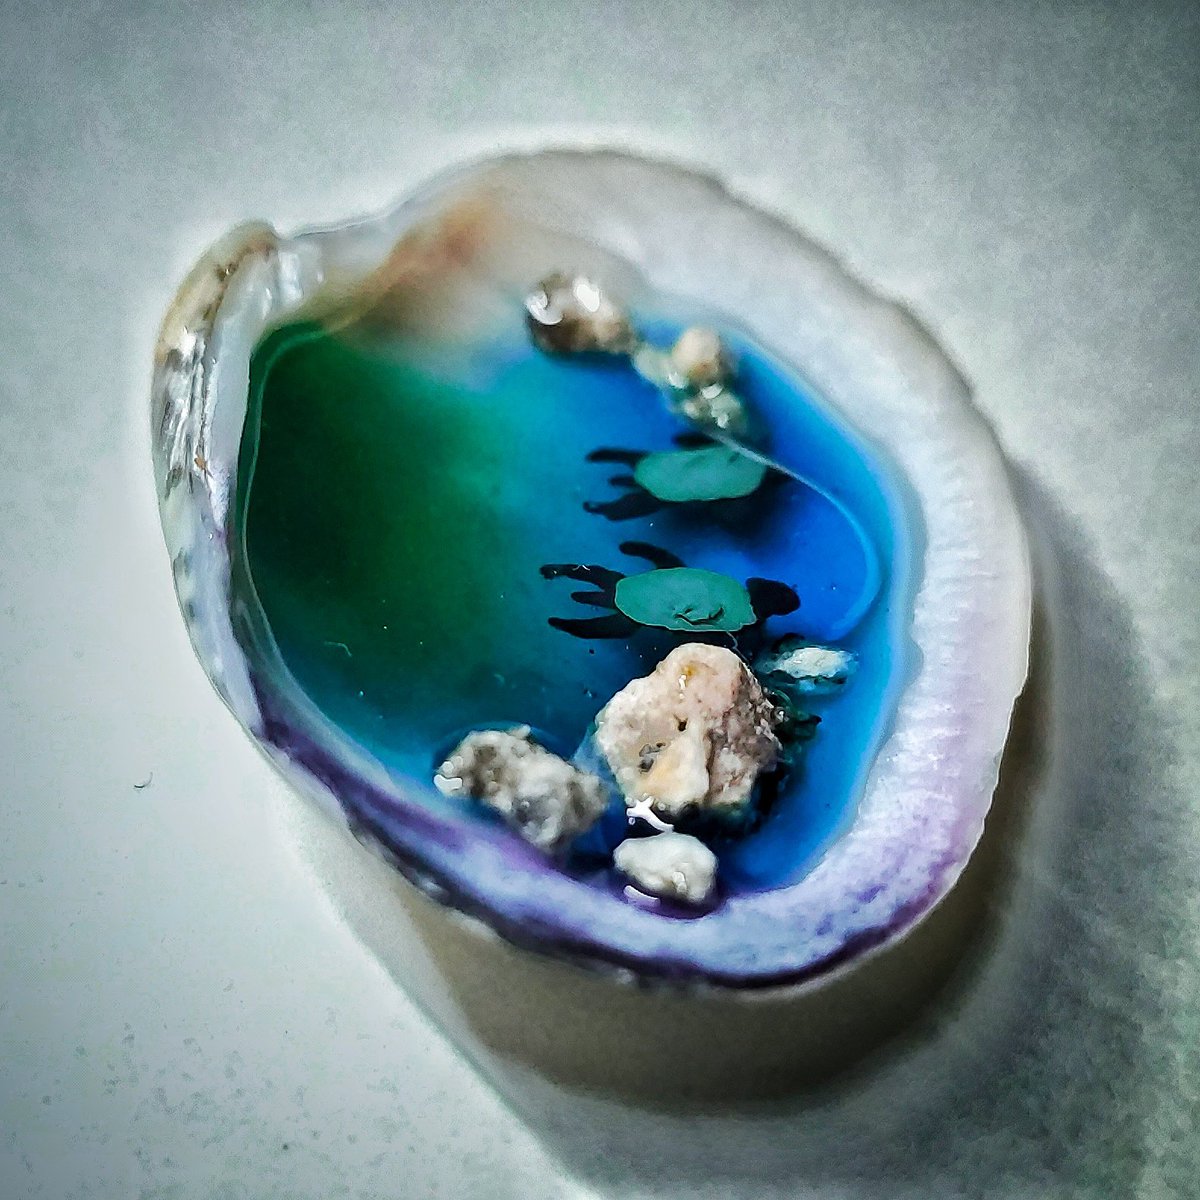 🌊🐢🐚Haciendo un micro-paisaje en una concha de la playa 😁
~•~•~•~•~•~•~•~•~•~•~•~•~•~•~•~•~•~•~•~•~•~•
Sígueme si quieres ver más cosas como ésta 😁
#seashell #seashells #resinart #resinauv #resinjewelry #shell #concha #resin #resina #uvart #uv #uvresin